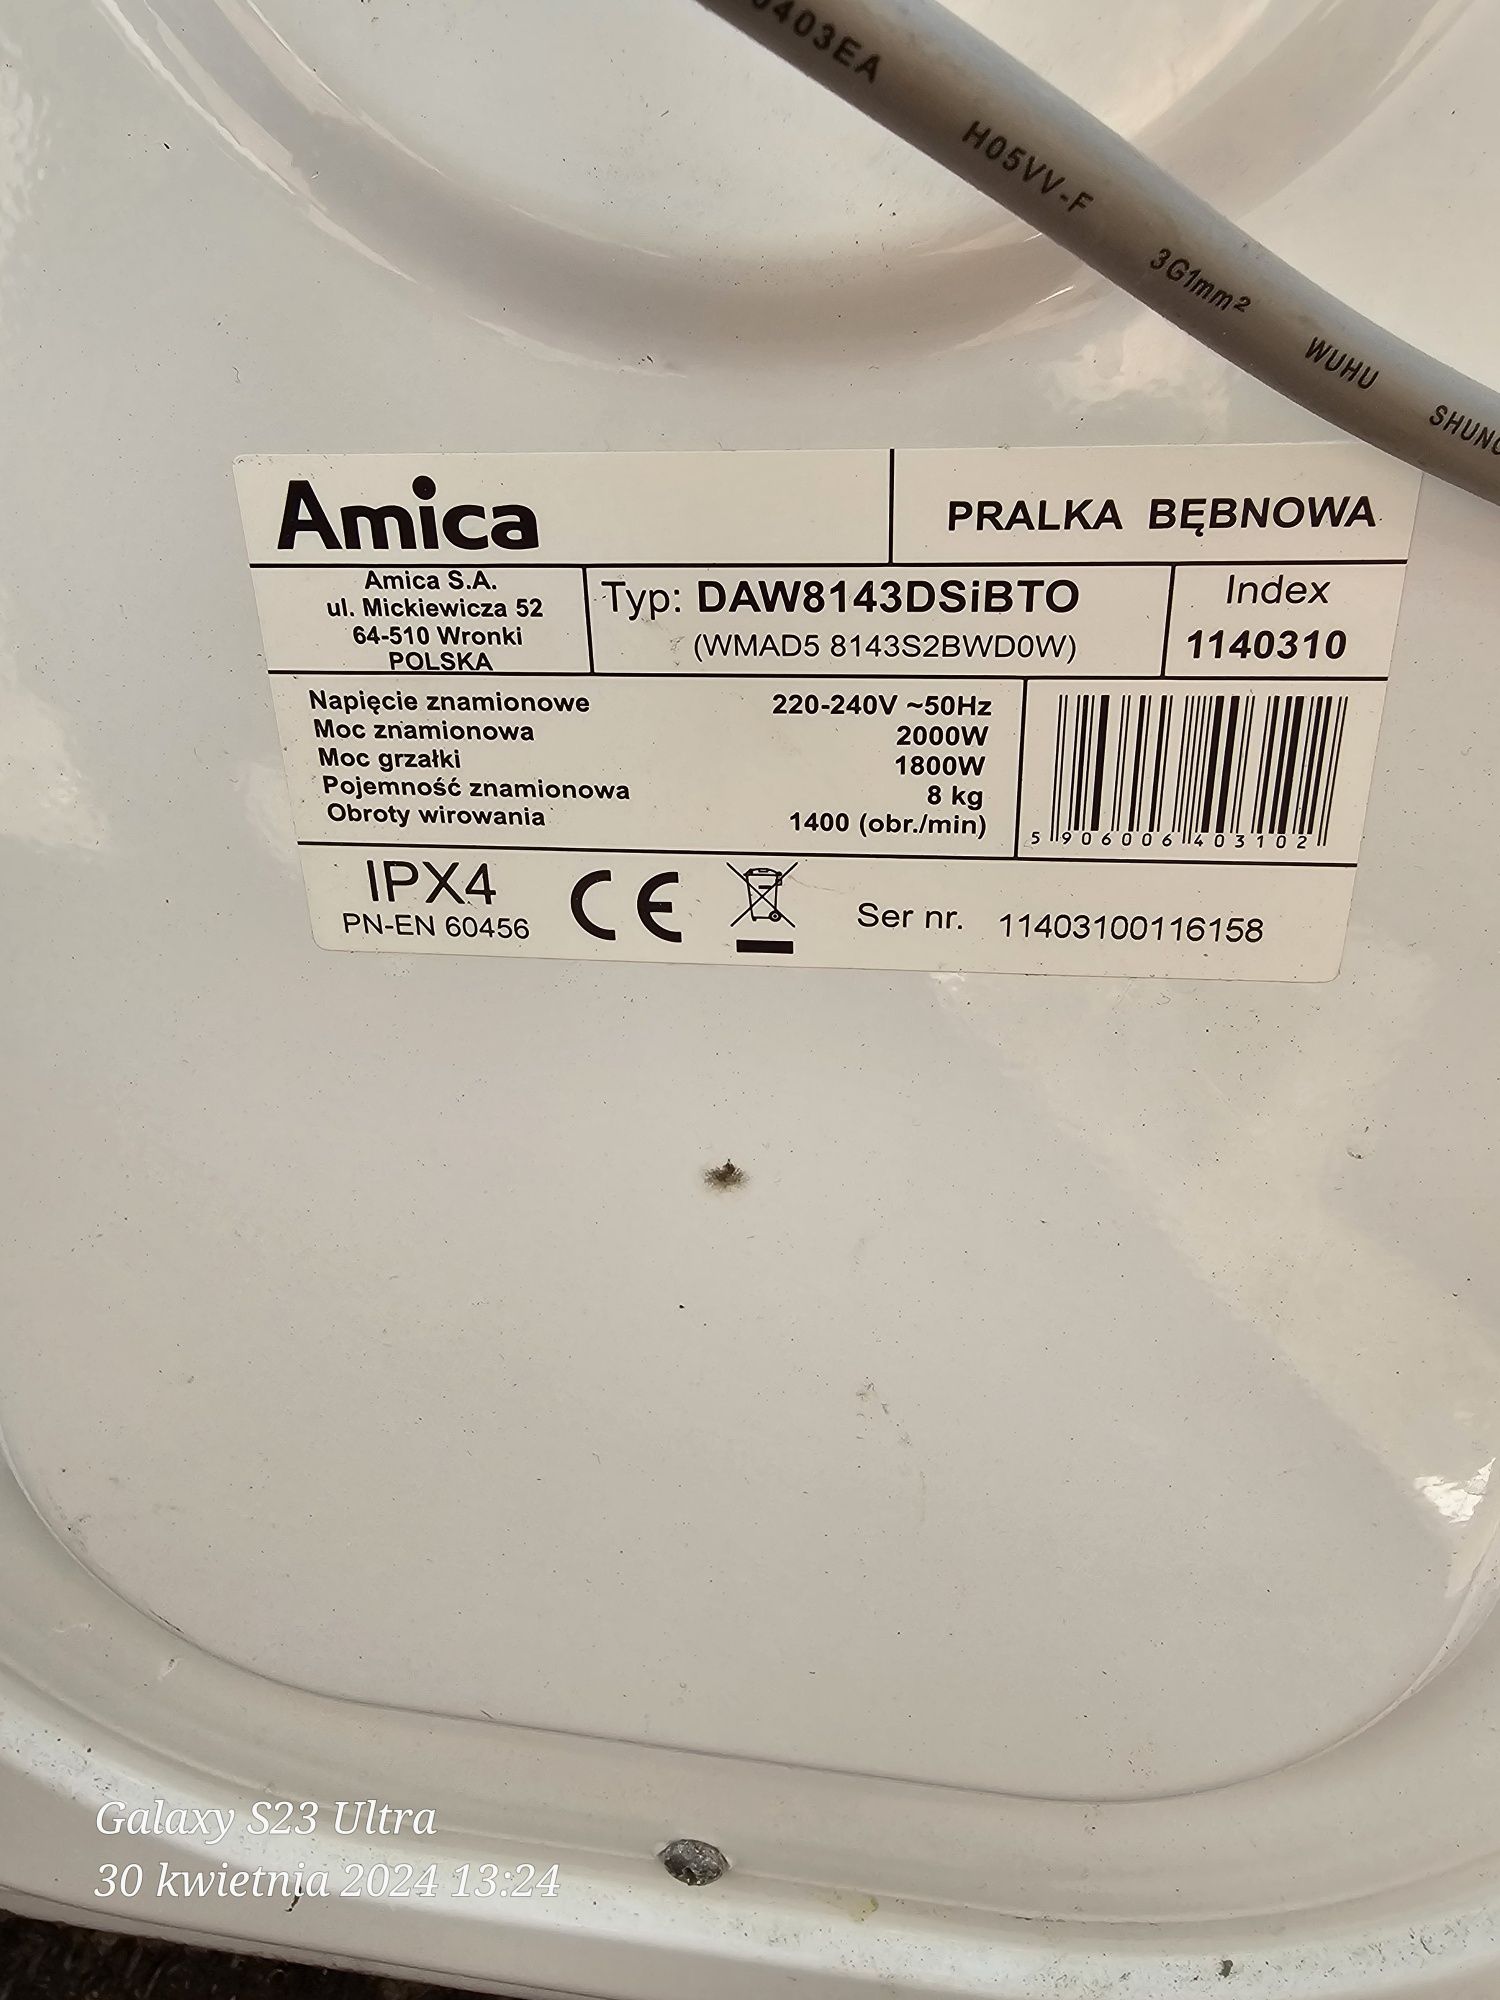 Amica DAW 8143 DSiBT0
Ładowność 	8 kg